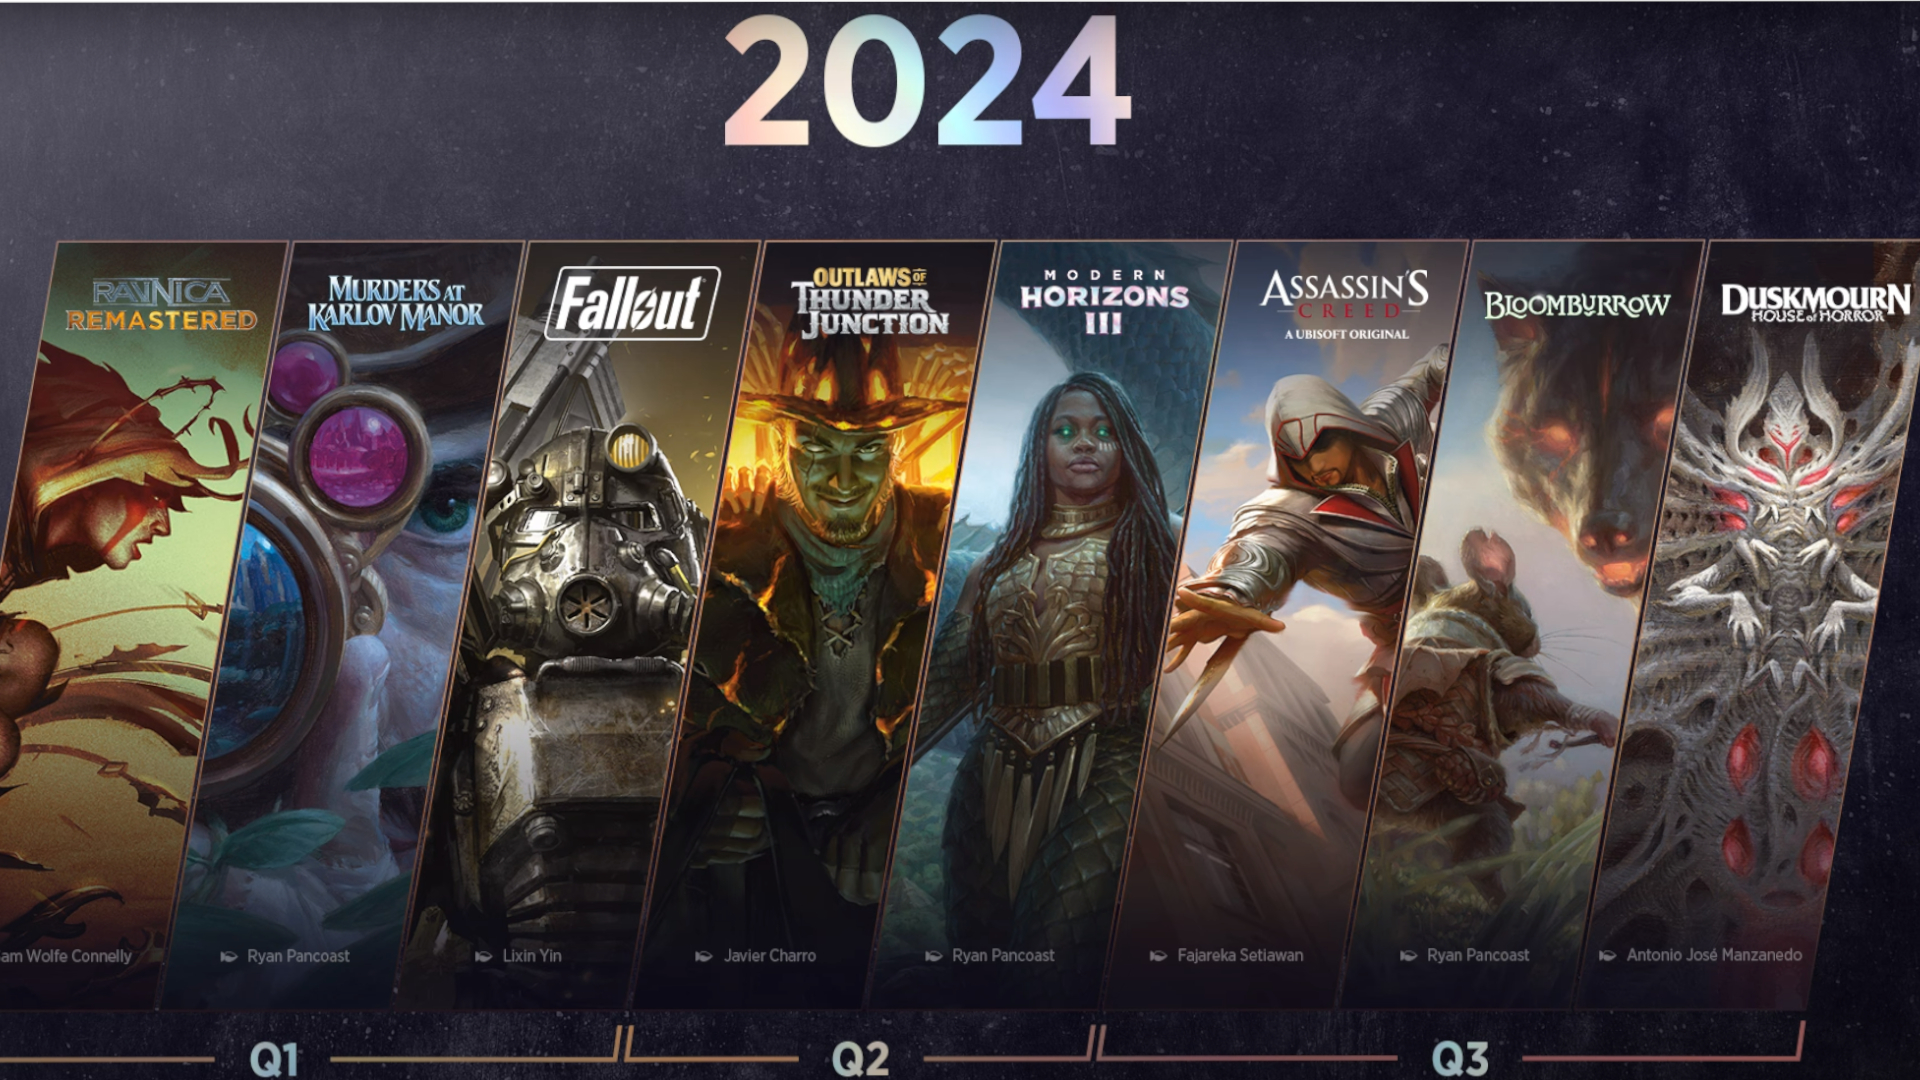 Die kommenden Veröffentlichungen von Magic: The Gathering im Jahr 2024 stehen in der Reihe